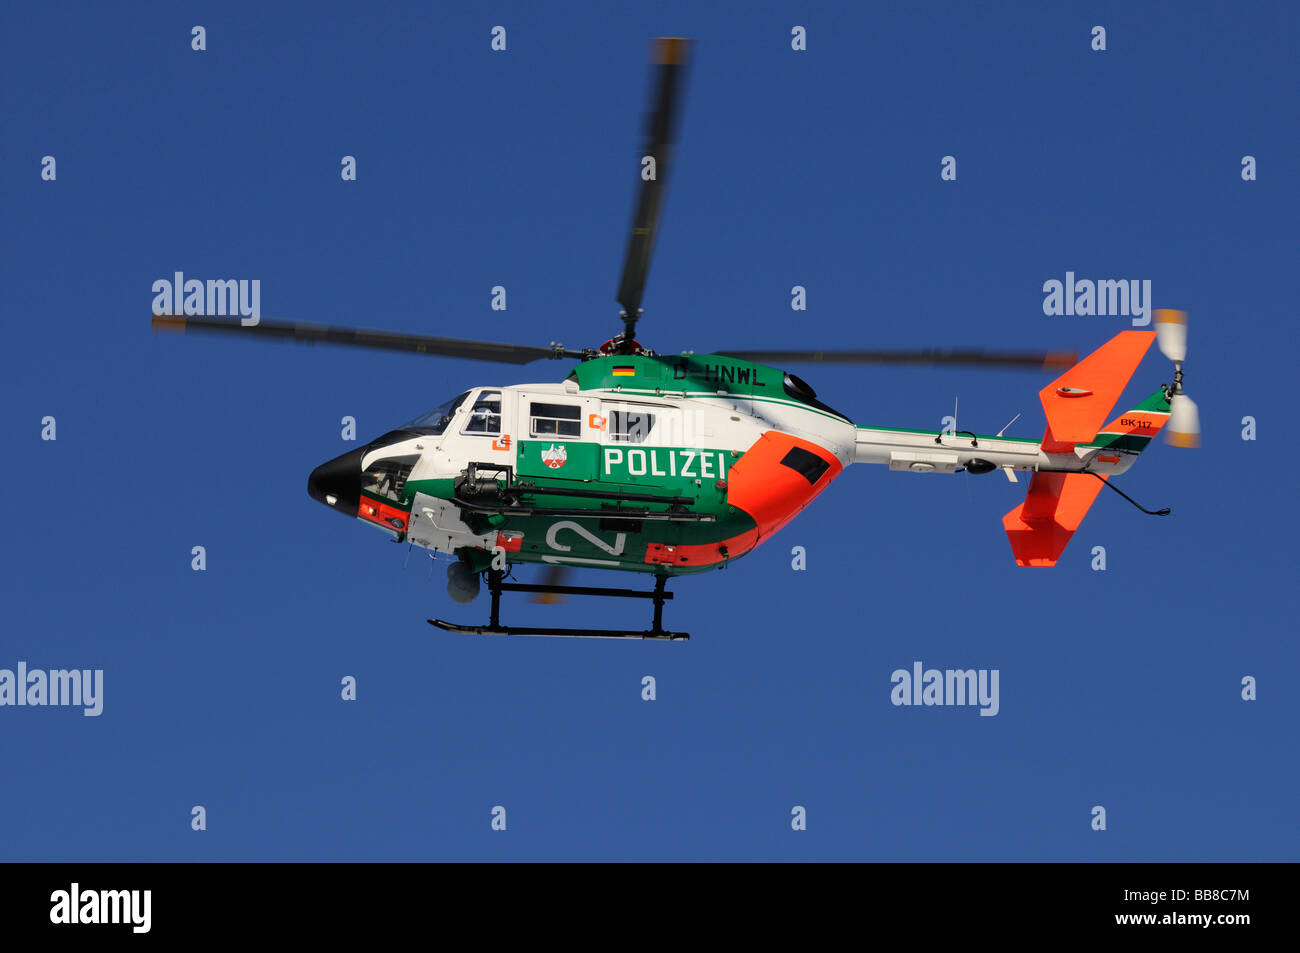 Polizei-Hubschrauber im Flug gegen einen stahlblauen Himmel Stockfoto